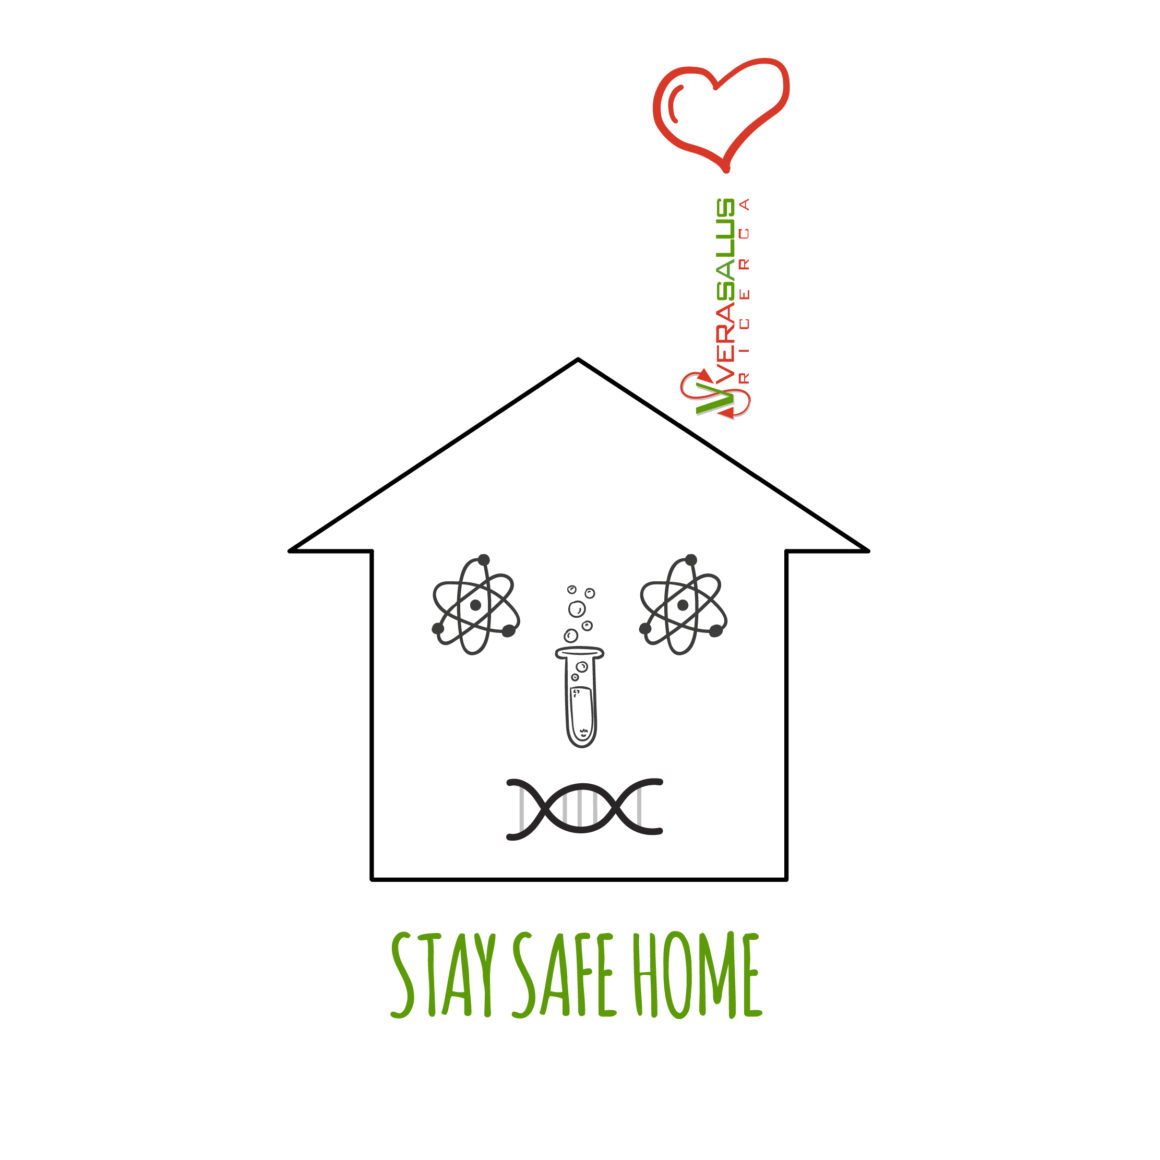 #StaySafeHome – Stare a casa non basta per essere al sicuro